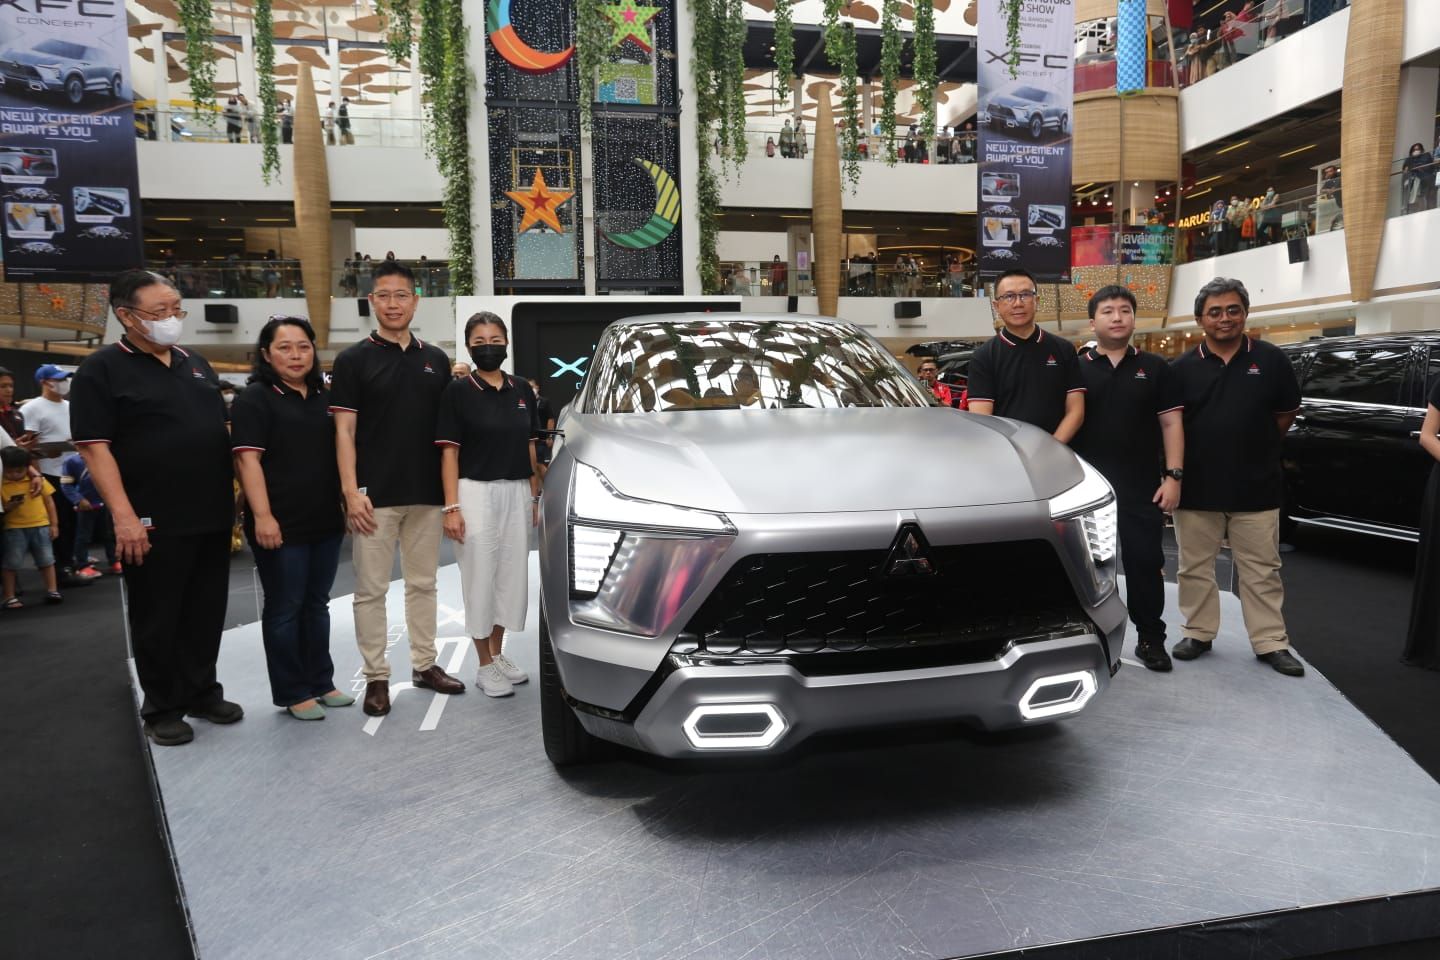 MITSUBISHI XFC Concept dipamerkan selama empat hari, dari 22-25 Maret di mal 23 Paskal Shopping Center, Jalan Pasirkaliki, Kota Bandung